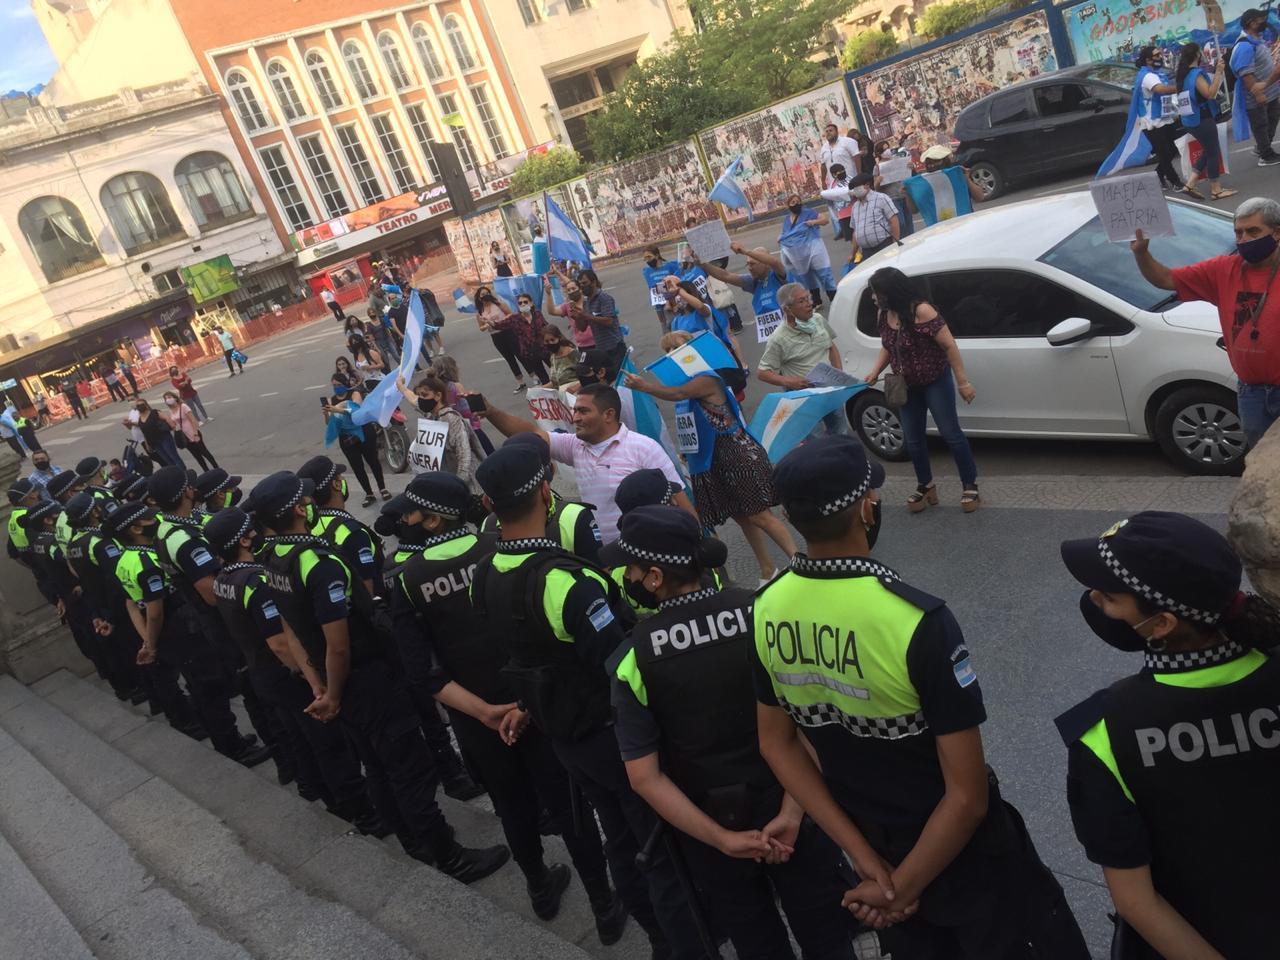 ESTRICTA VIGILANCIA. Decenas de policías se observaron en las escalinatas de la Casa de Gobierno. Foto: LA GACETA / Álvaro Medina